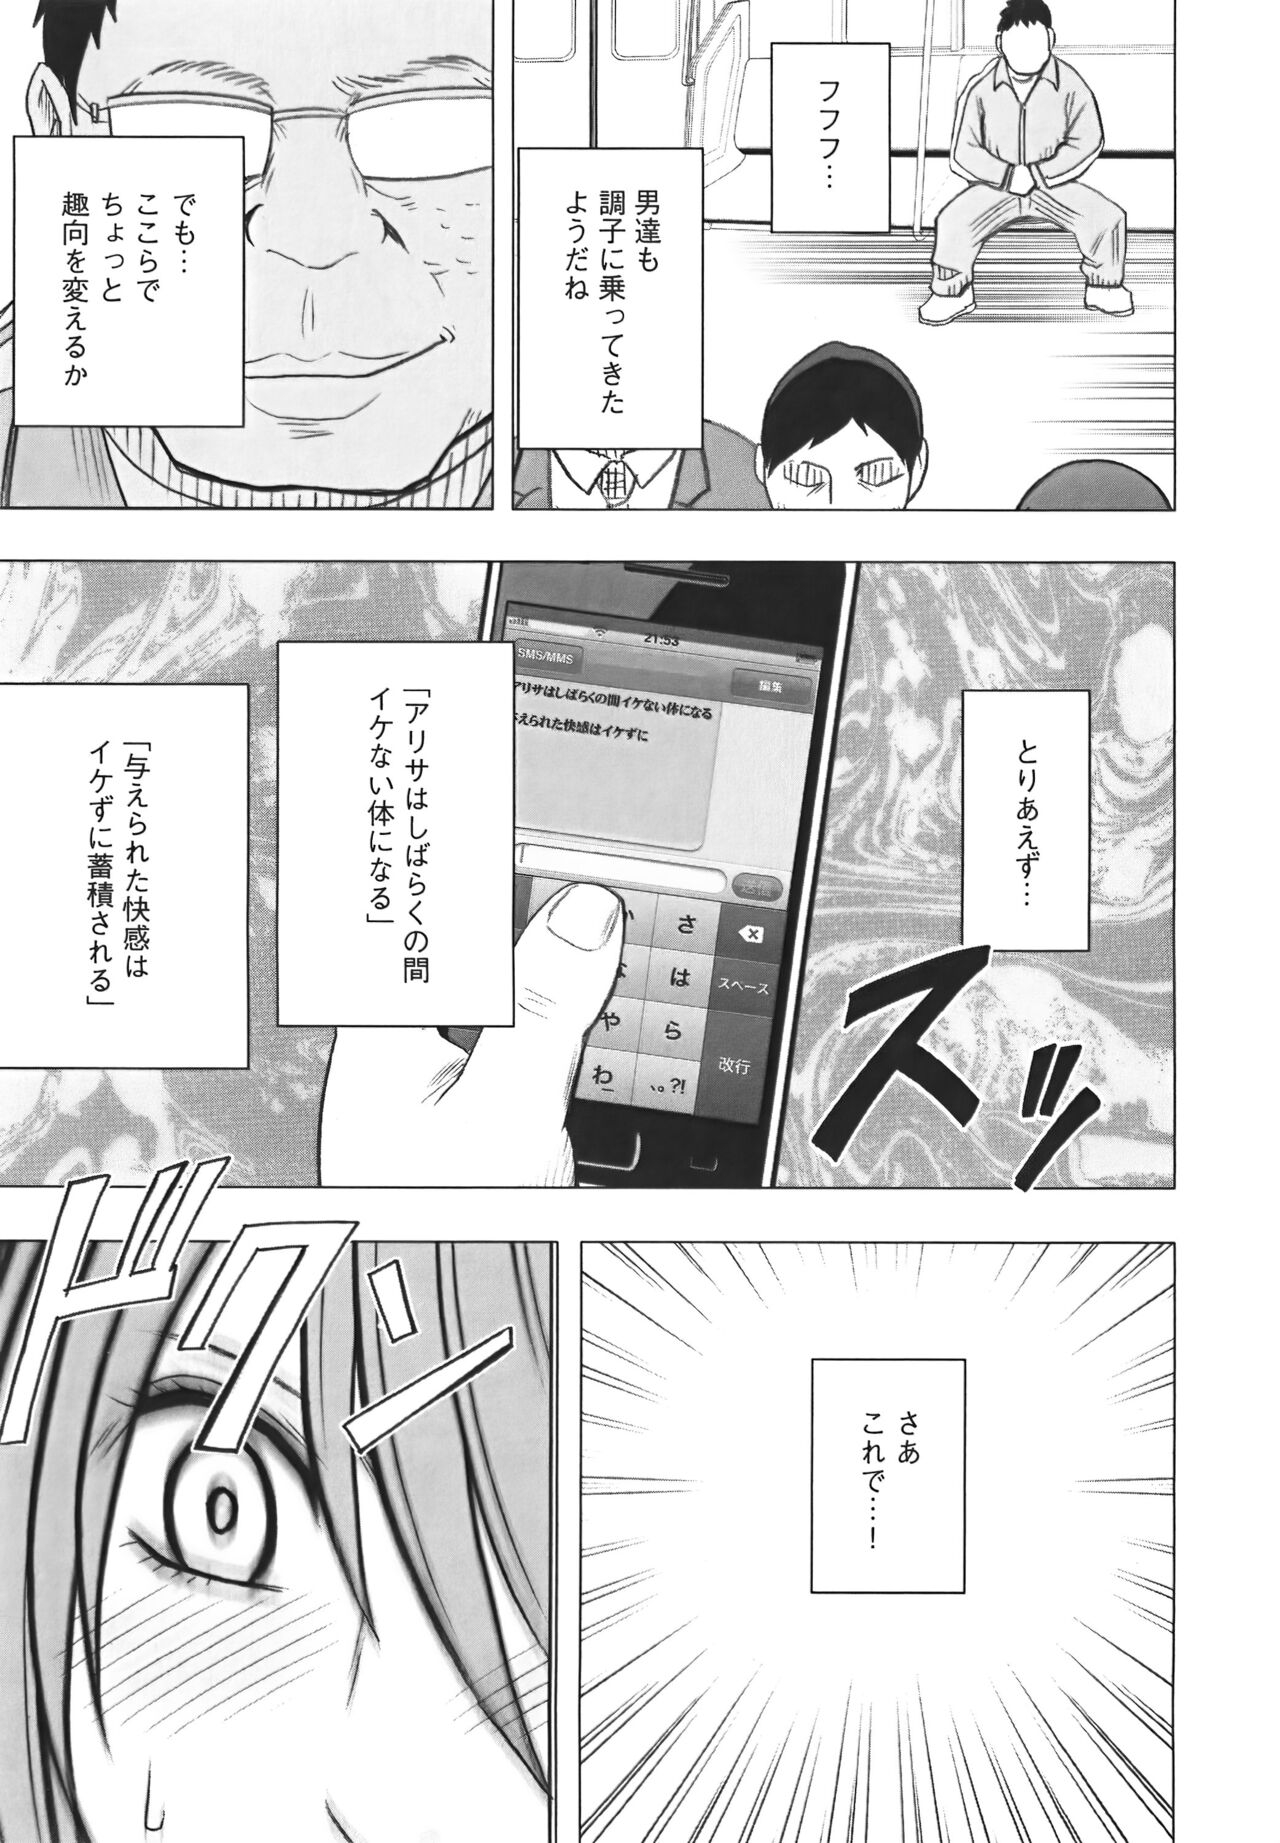 [Crimson] Idol Kyousei Sousa Vol.1 Smartphone de Meireishita Koto ga Genjitsu ni [Complete Edition] 192